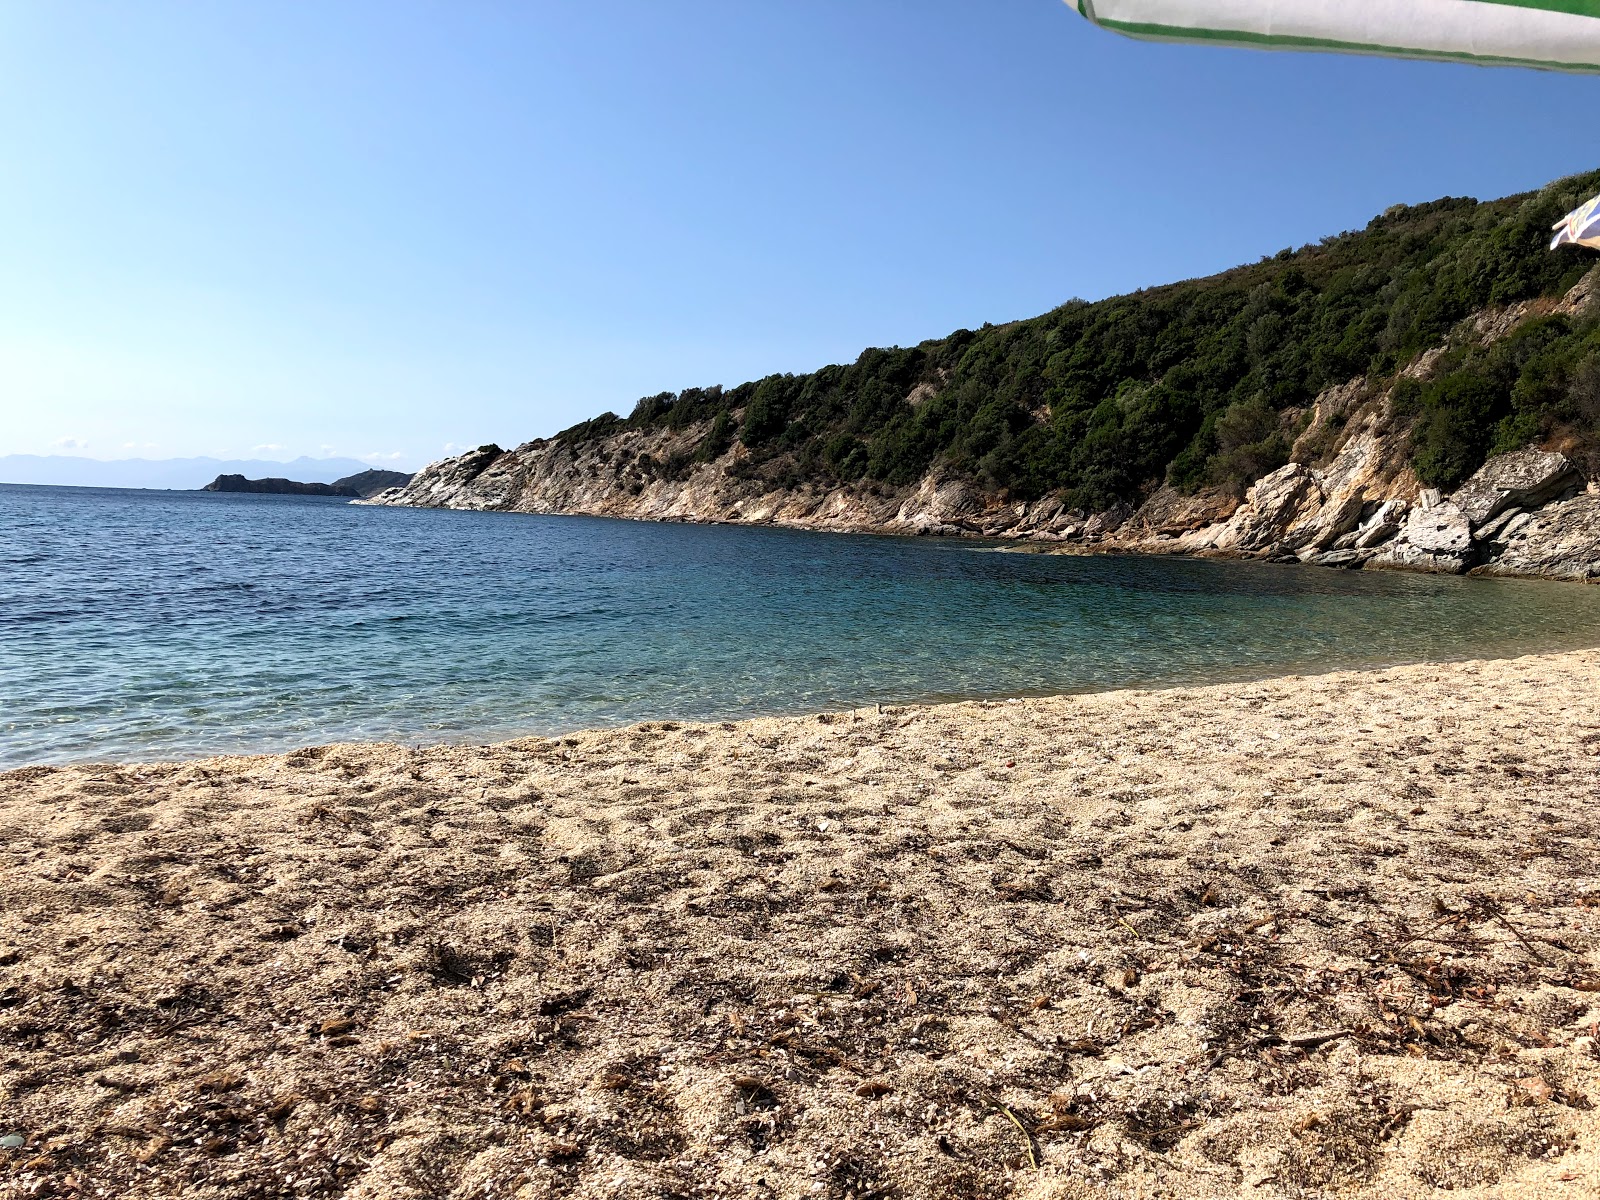 Fotografie cu Gardo beach - locul popular printre cunoscătorii de relaxare